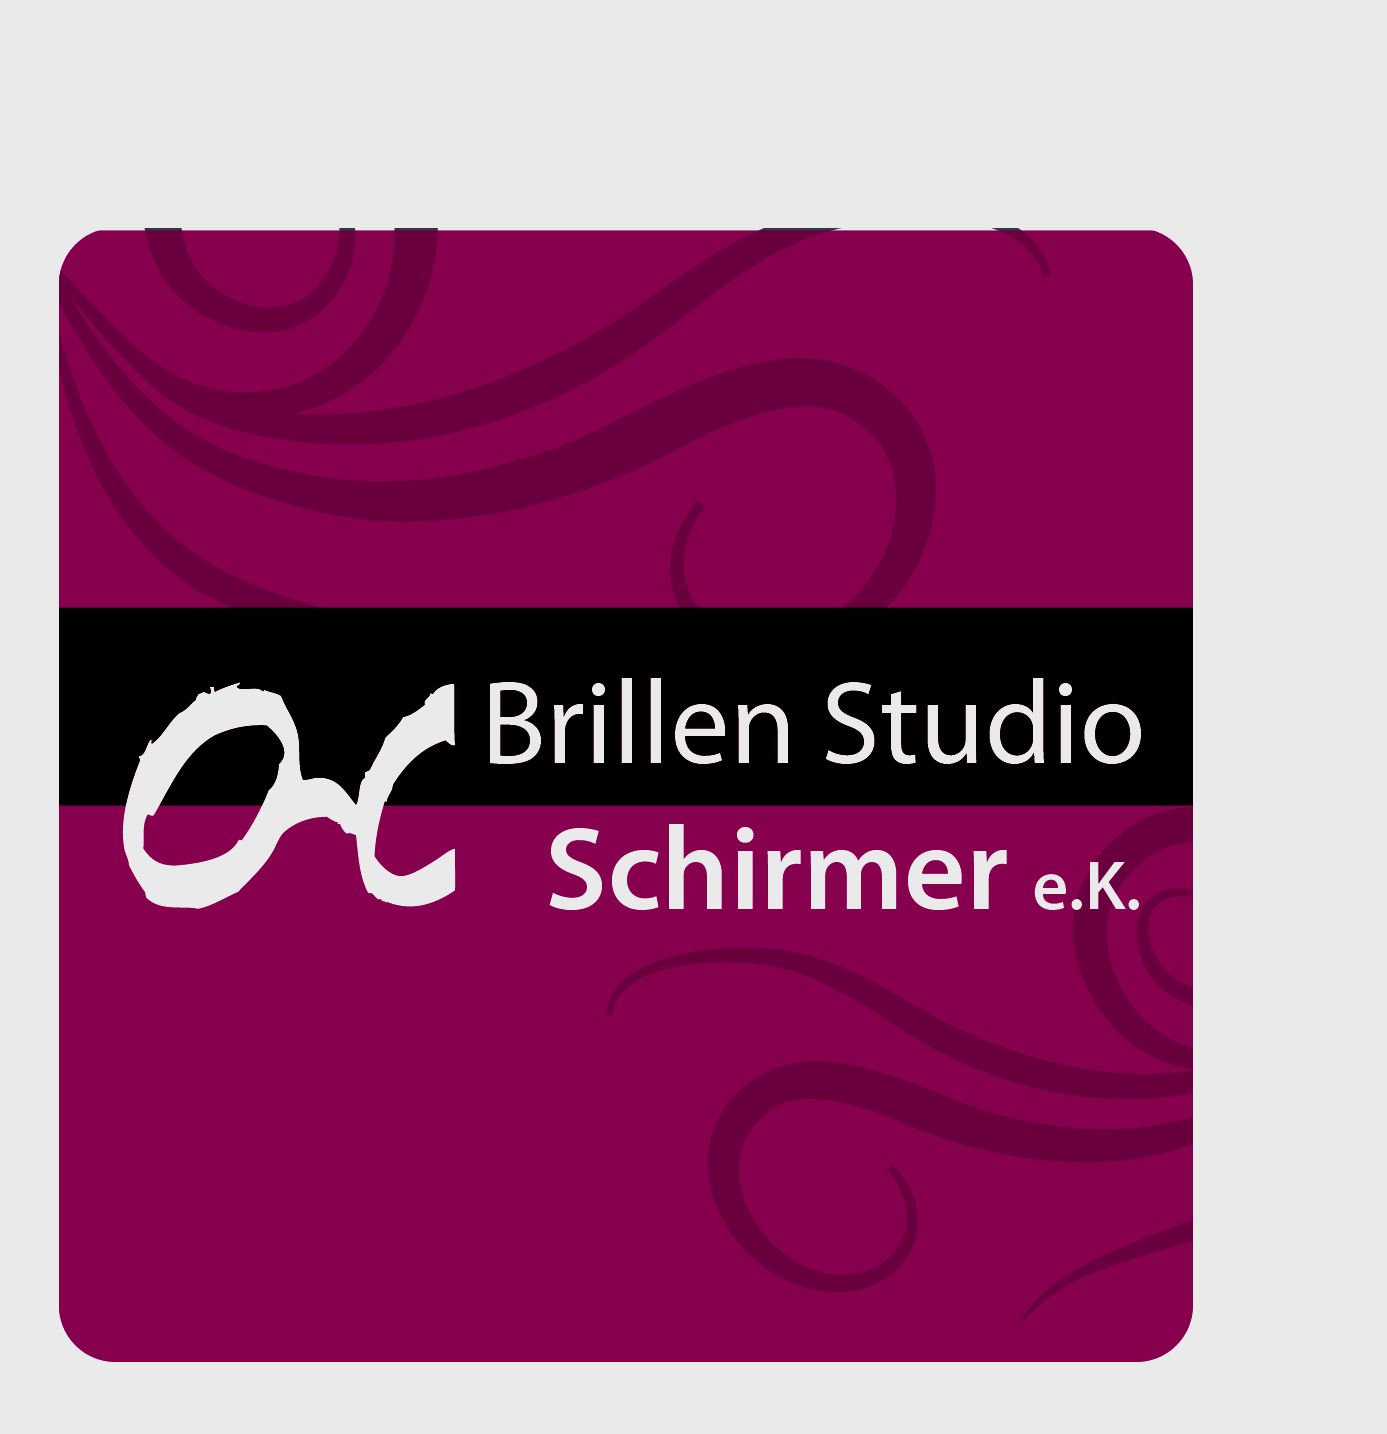 Brillen Studio Schirmer